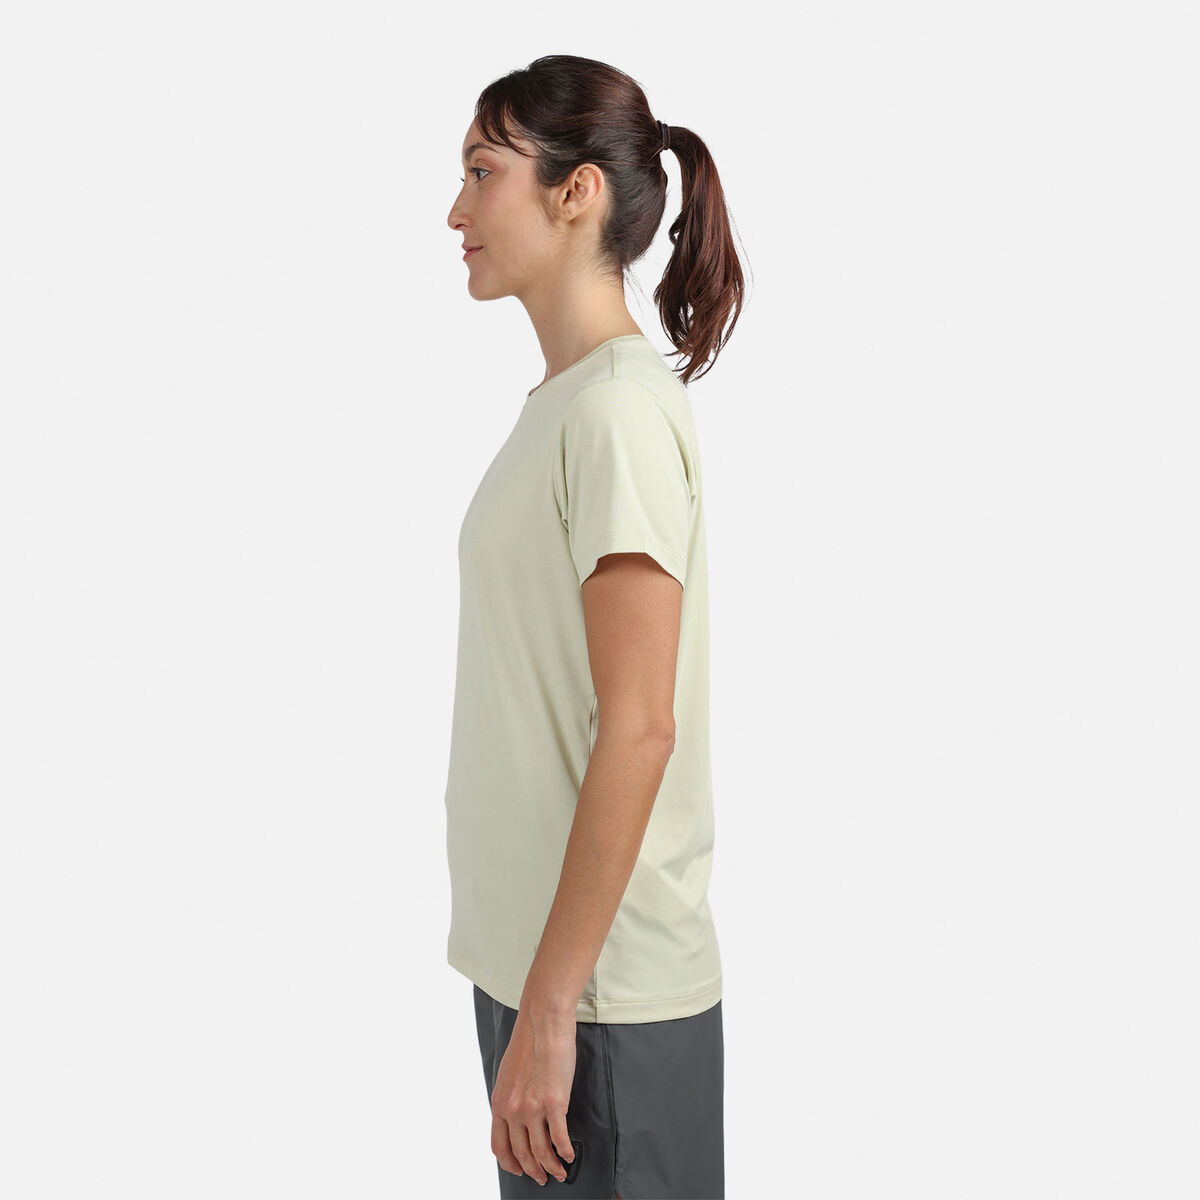 Camiseta E-Fiber Active Line para mujer